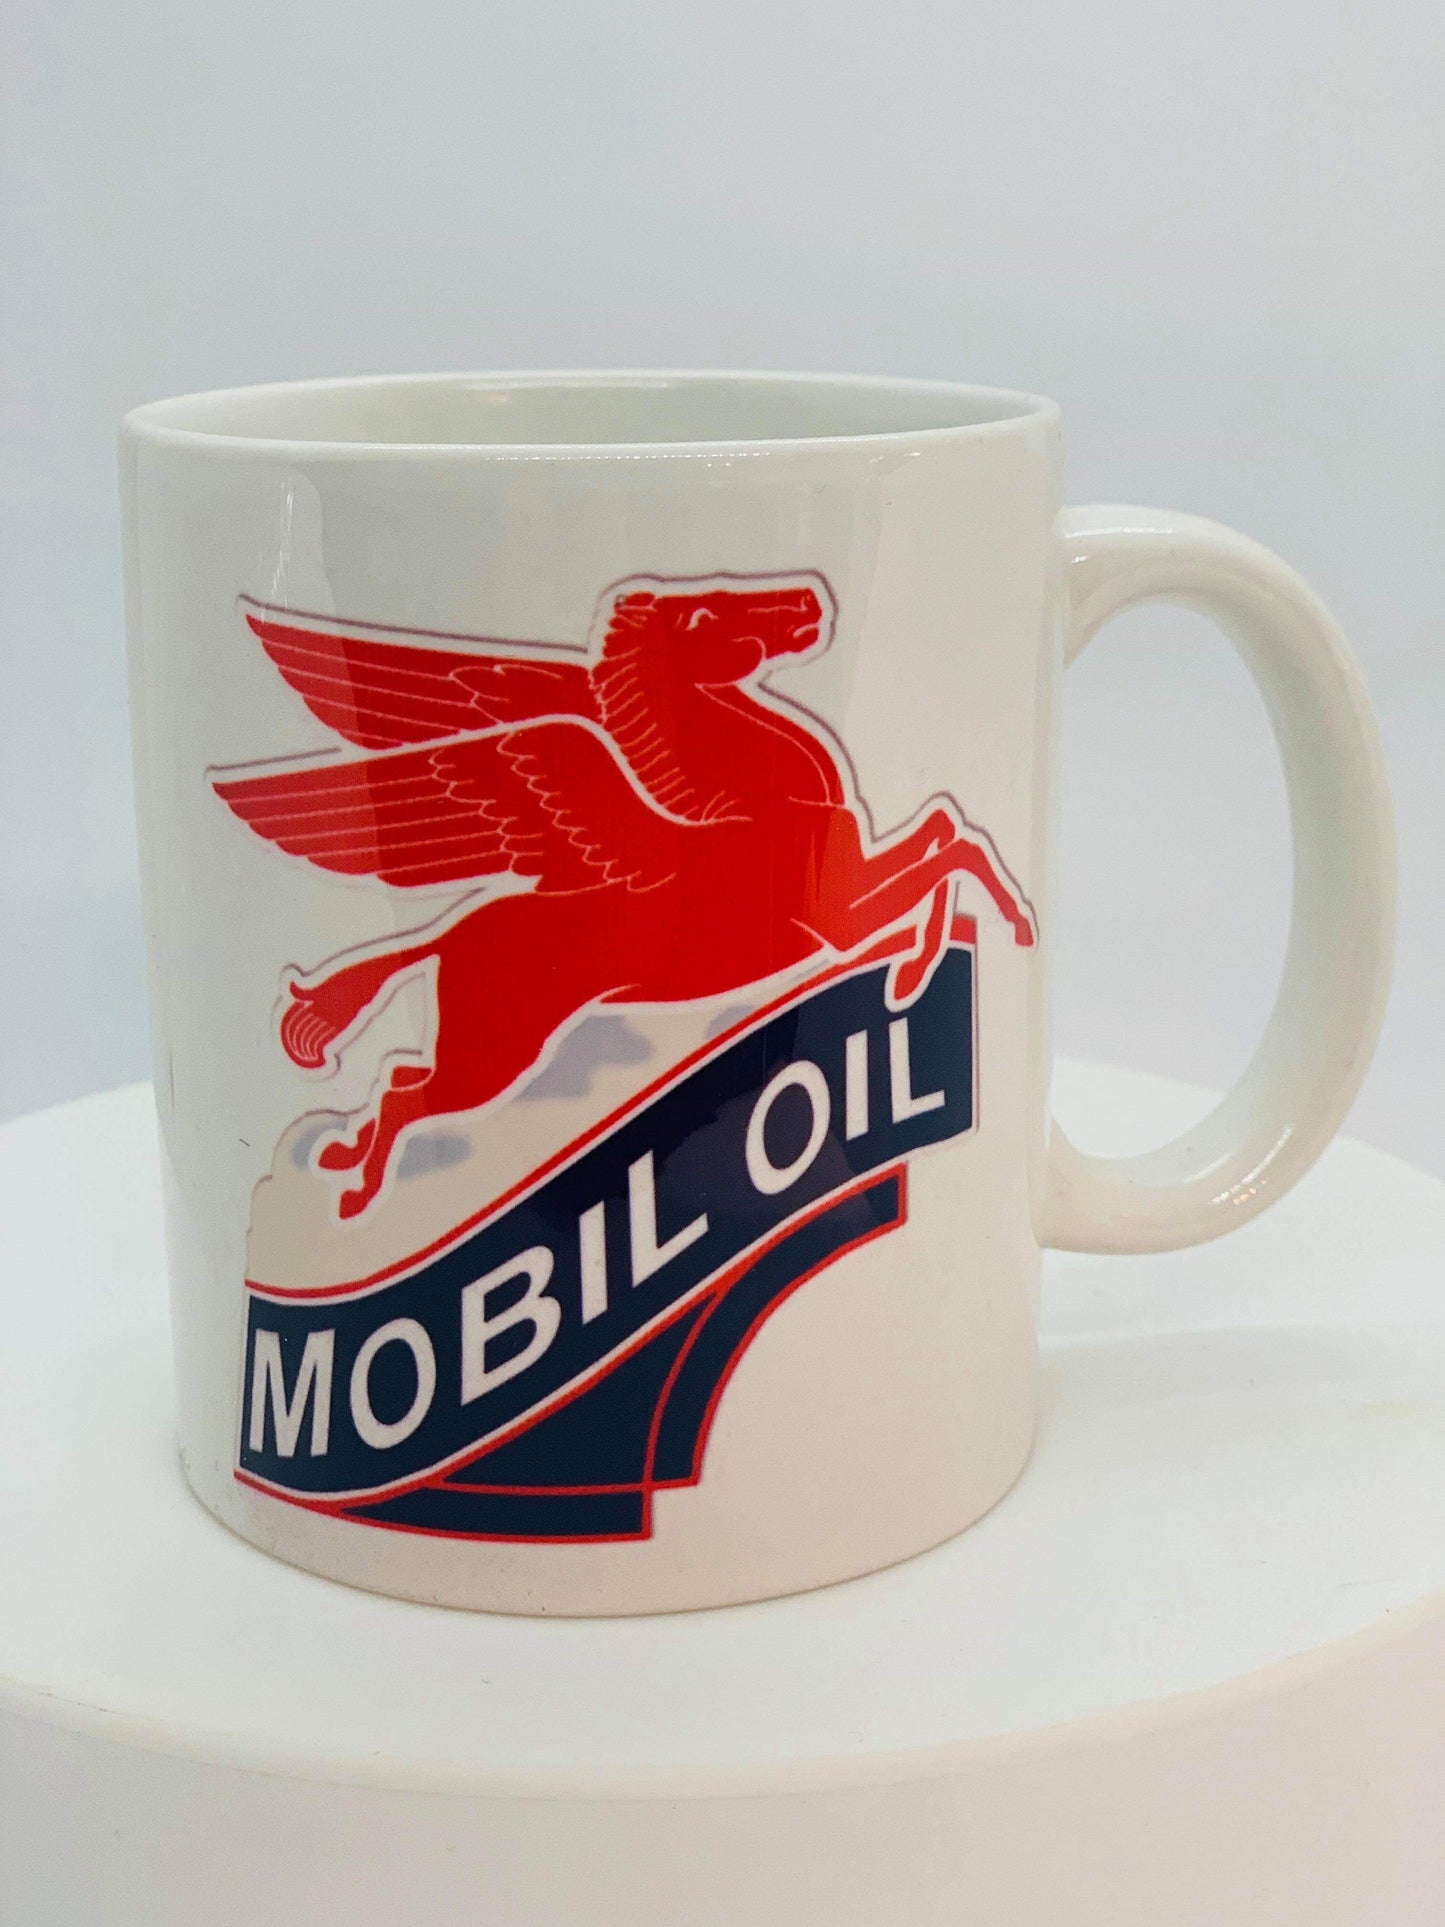 Petrol Related Mugs Mobil Oil